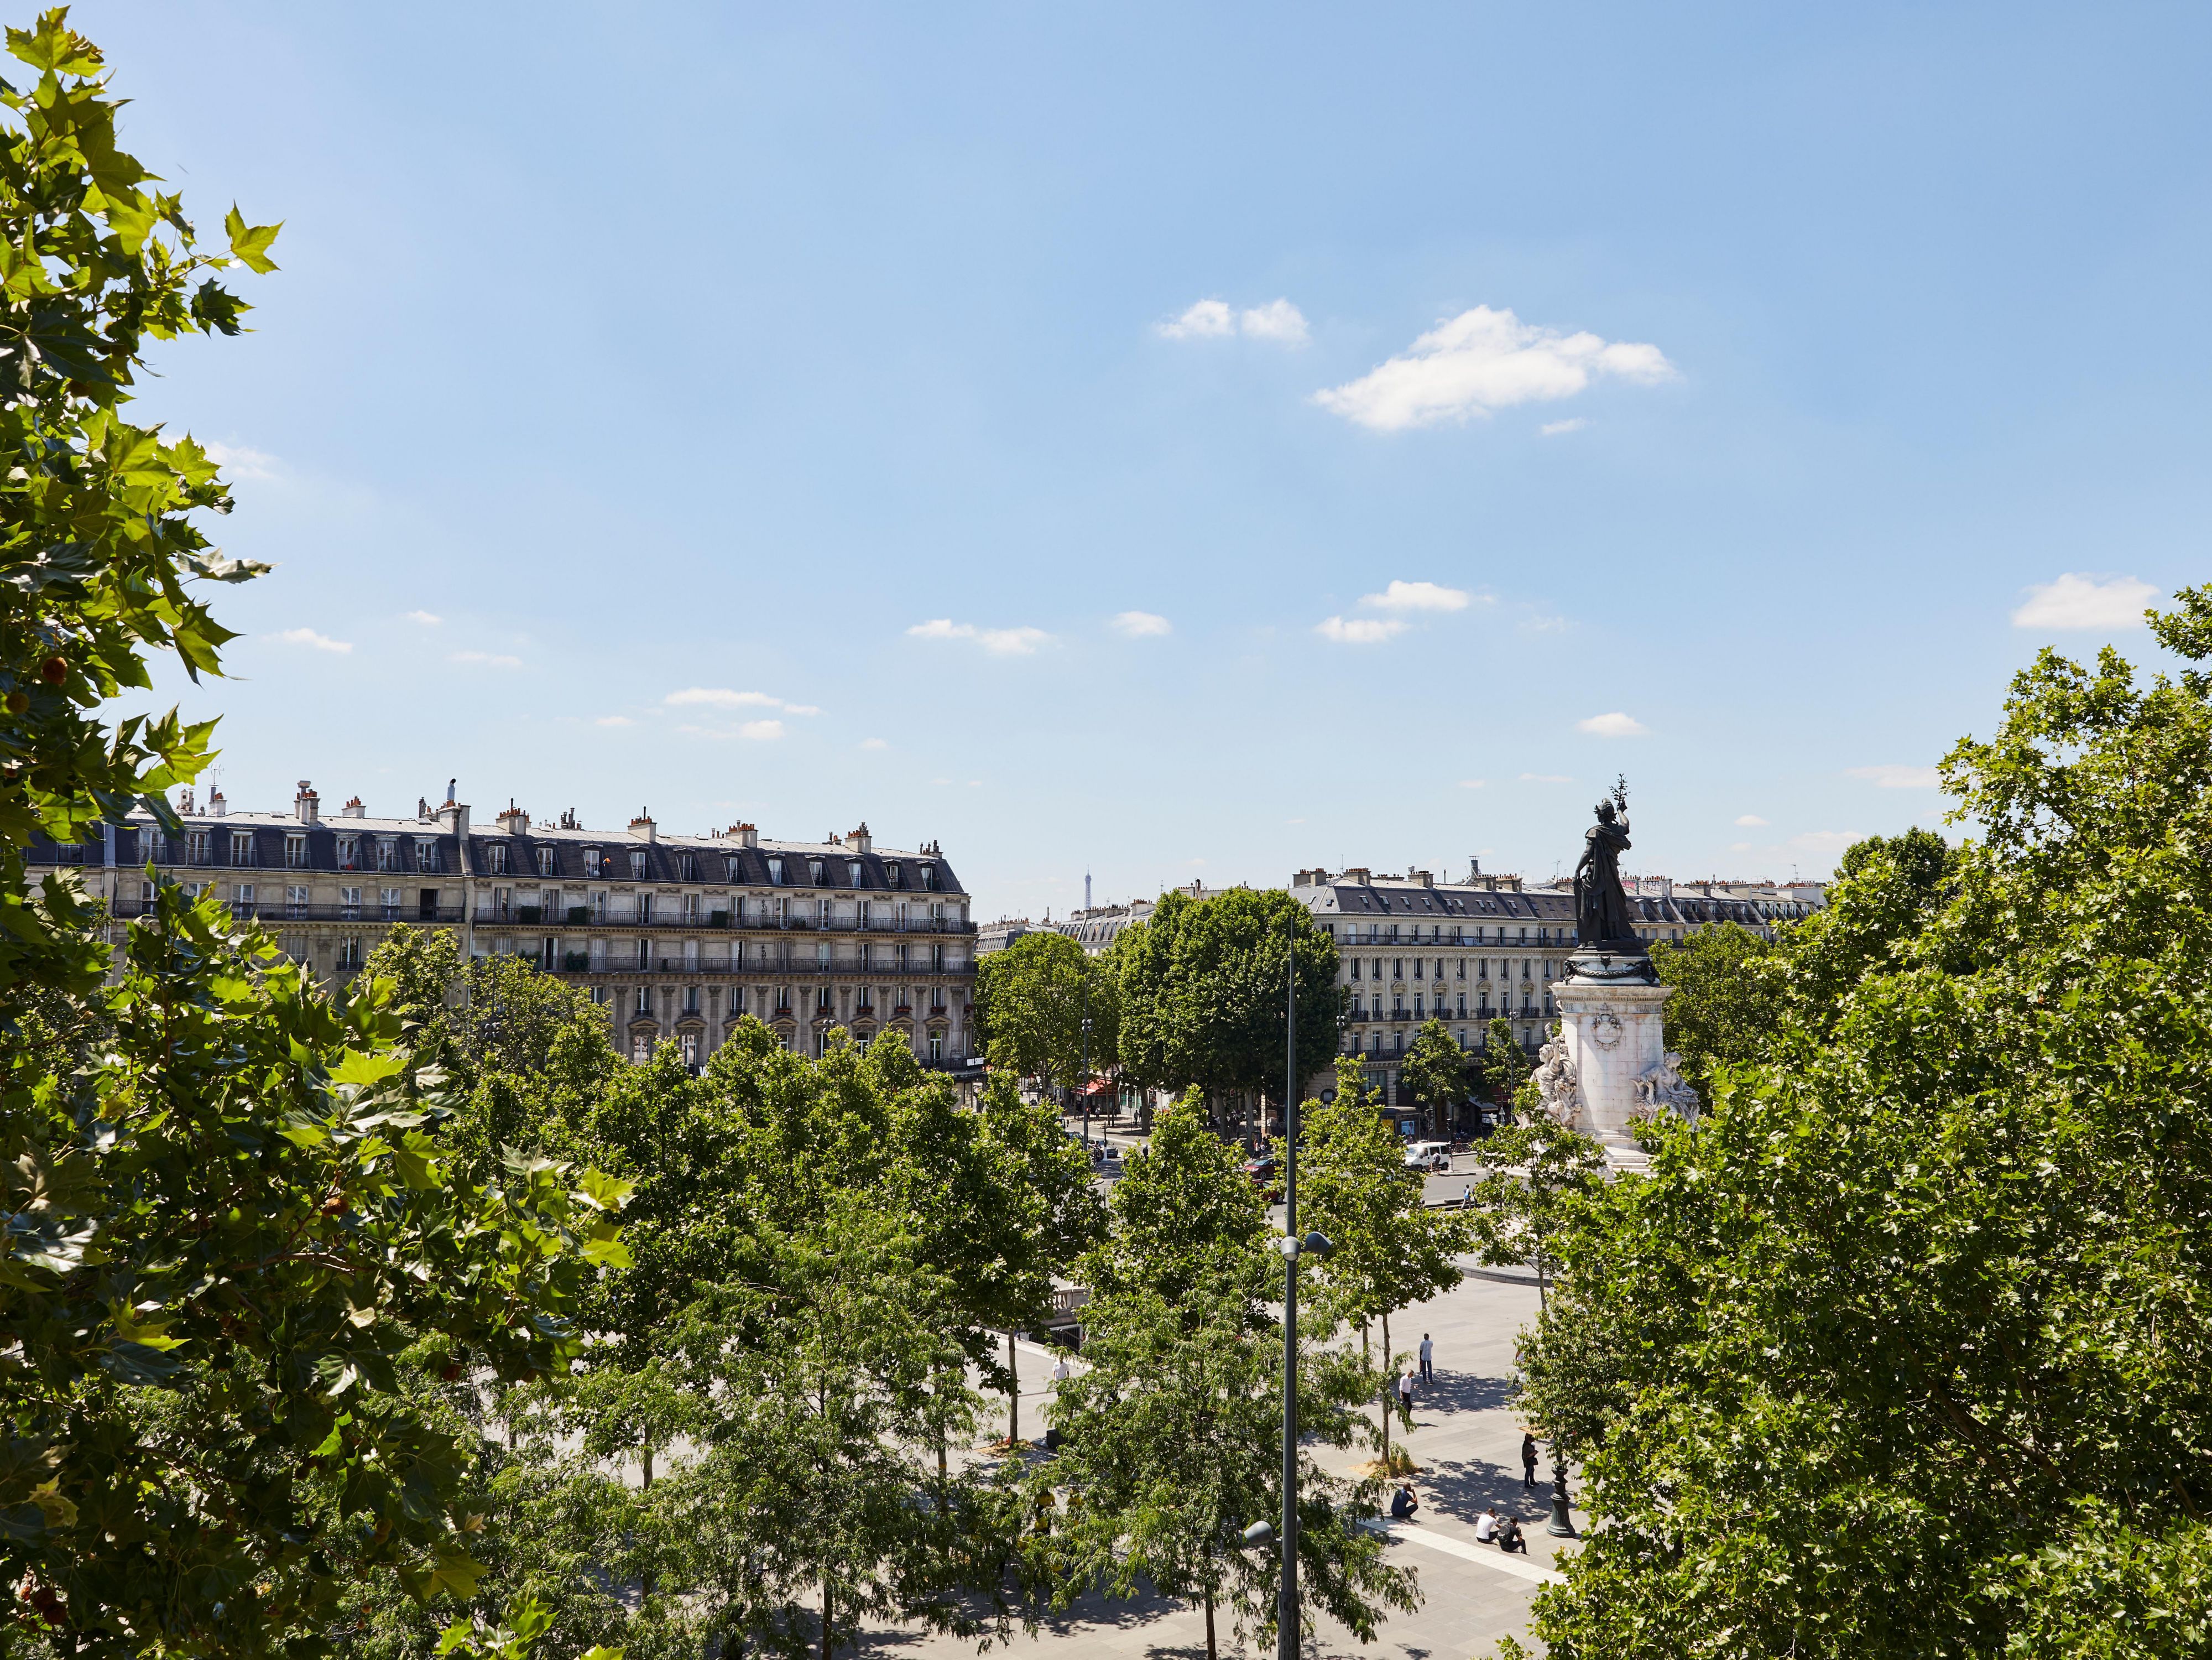 Situé sur la Place de la République, l'hôtel a une situation parfaite. A côté de l'entrée, 5 lignes de métro vous permettent de rejoindre tout Paris . A quelques minutes de la Gare du Nord et de l'Est, vous aurez, entre autre, un accès facile à l'Eurostar et bientôt au CDG express. Profitez du Marais, d'un quartier typiquement parisien !